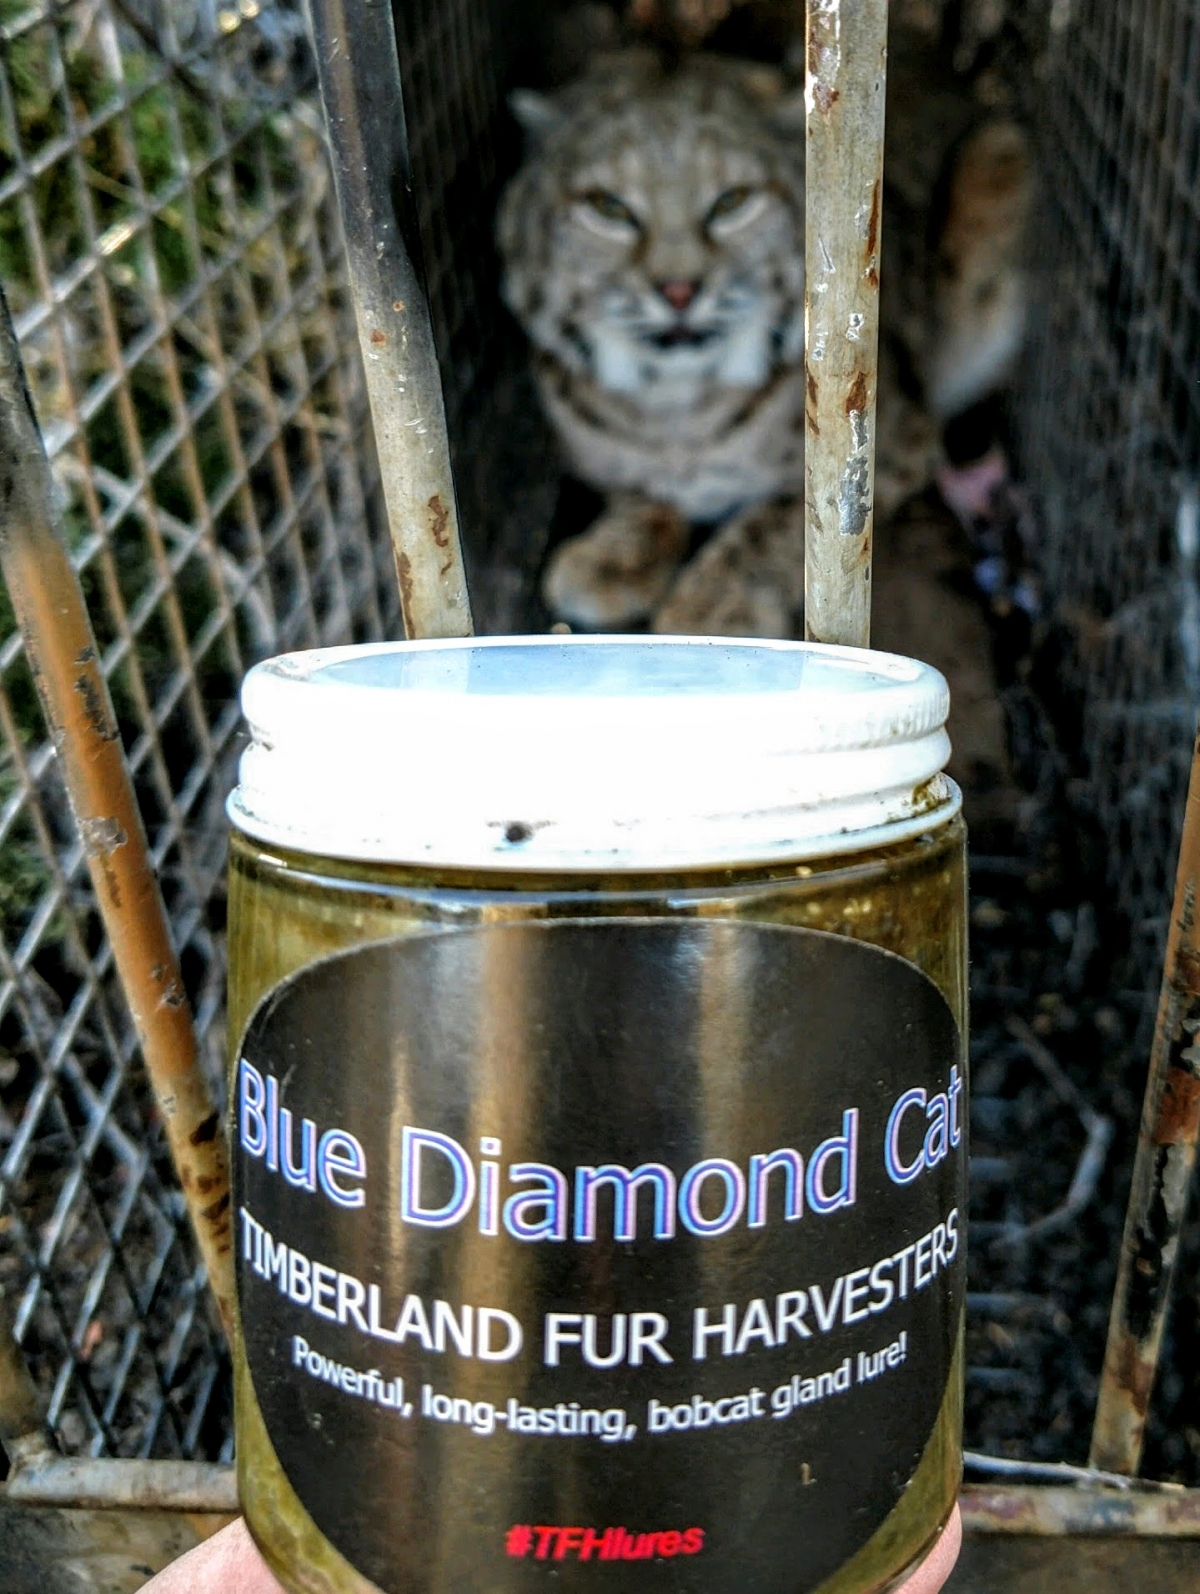 Blue Diamond Cat 4oz